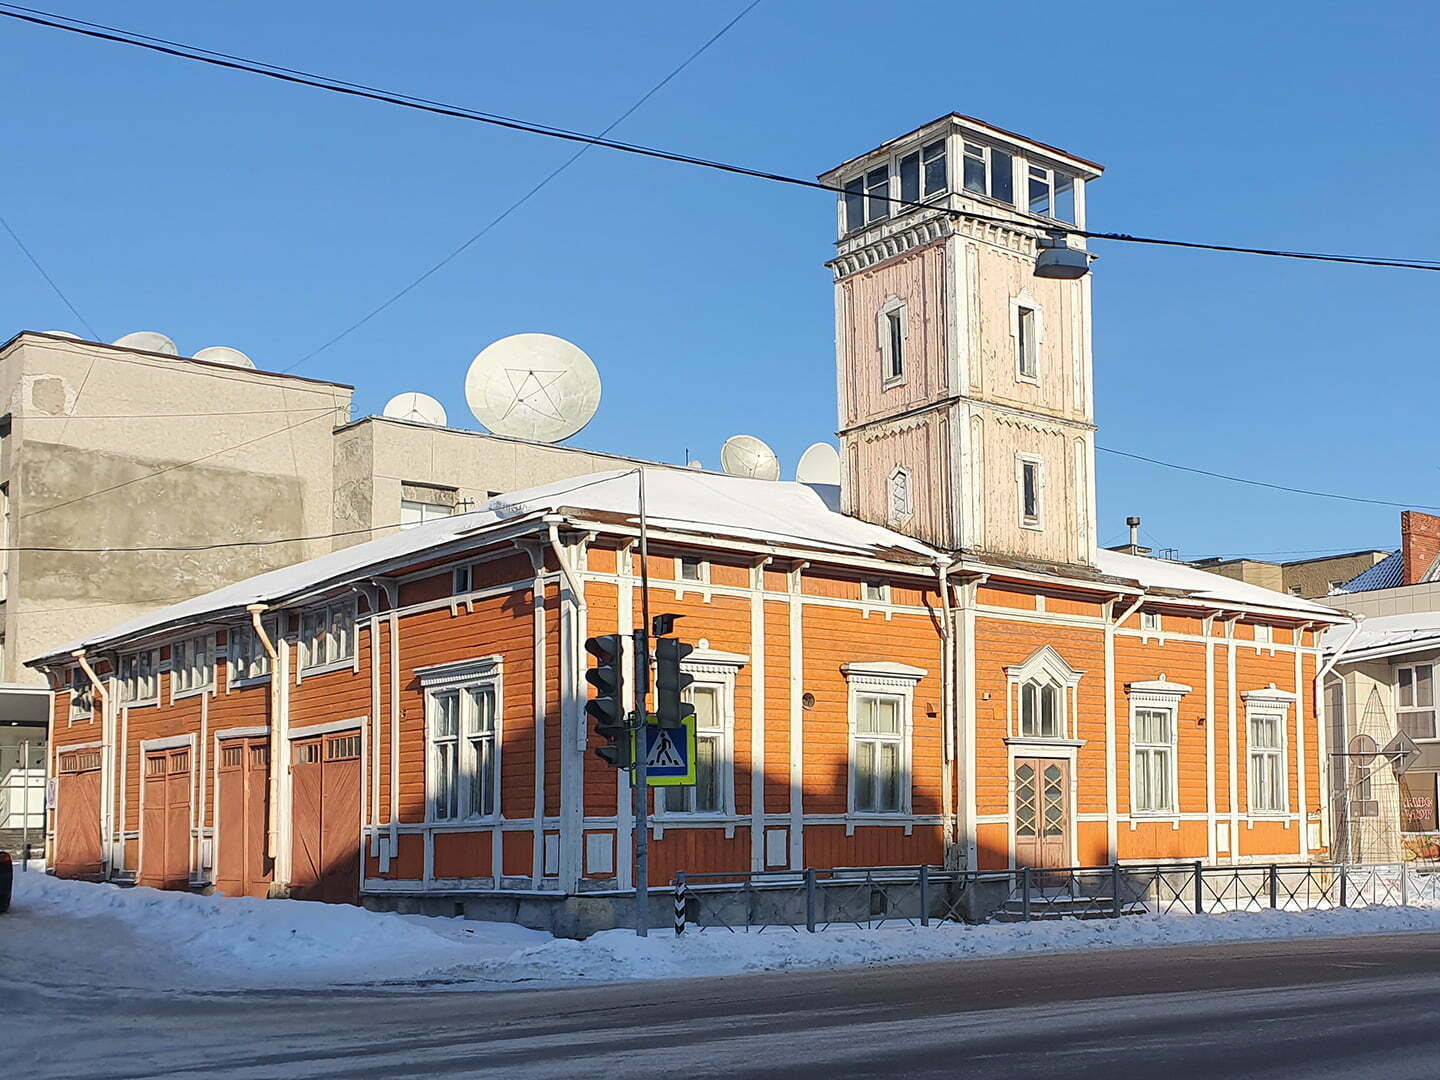 Пожарное депо, 1888 год, архитектор Ивар Аминов, Сортавала